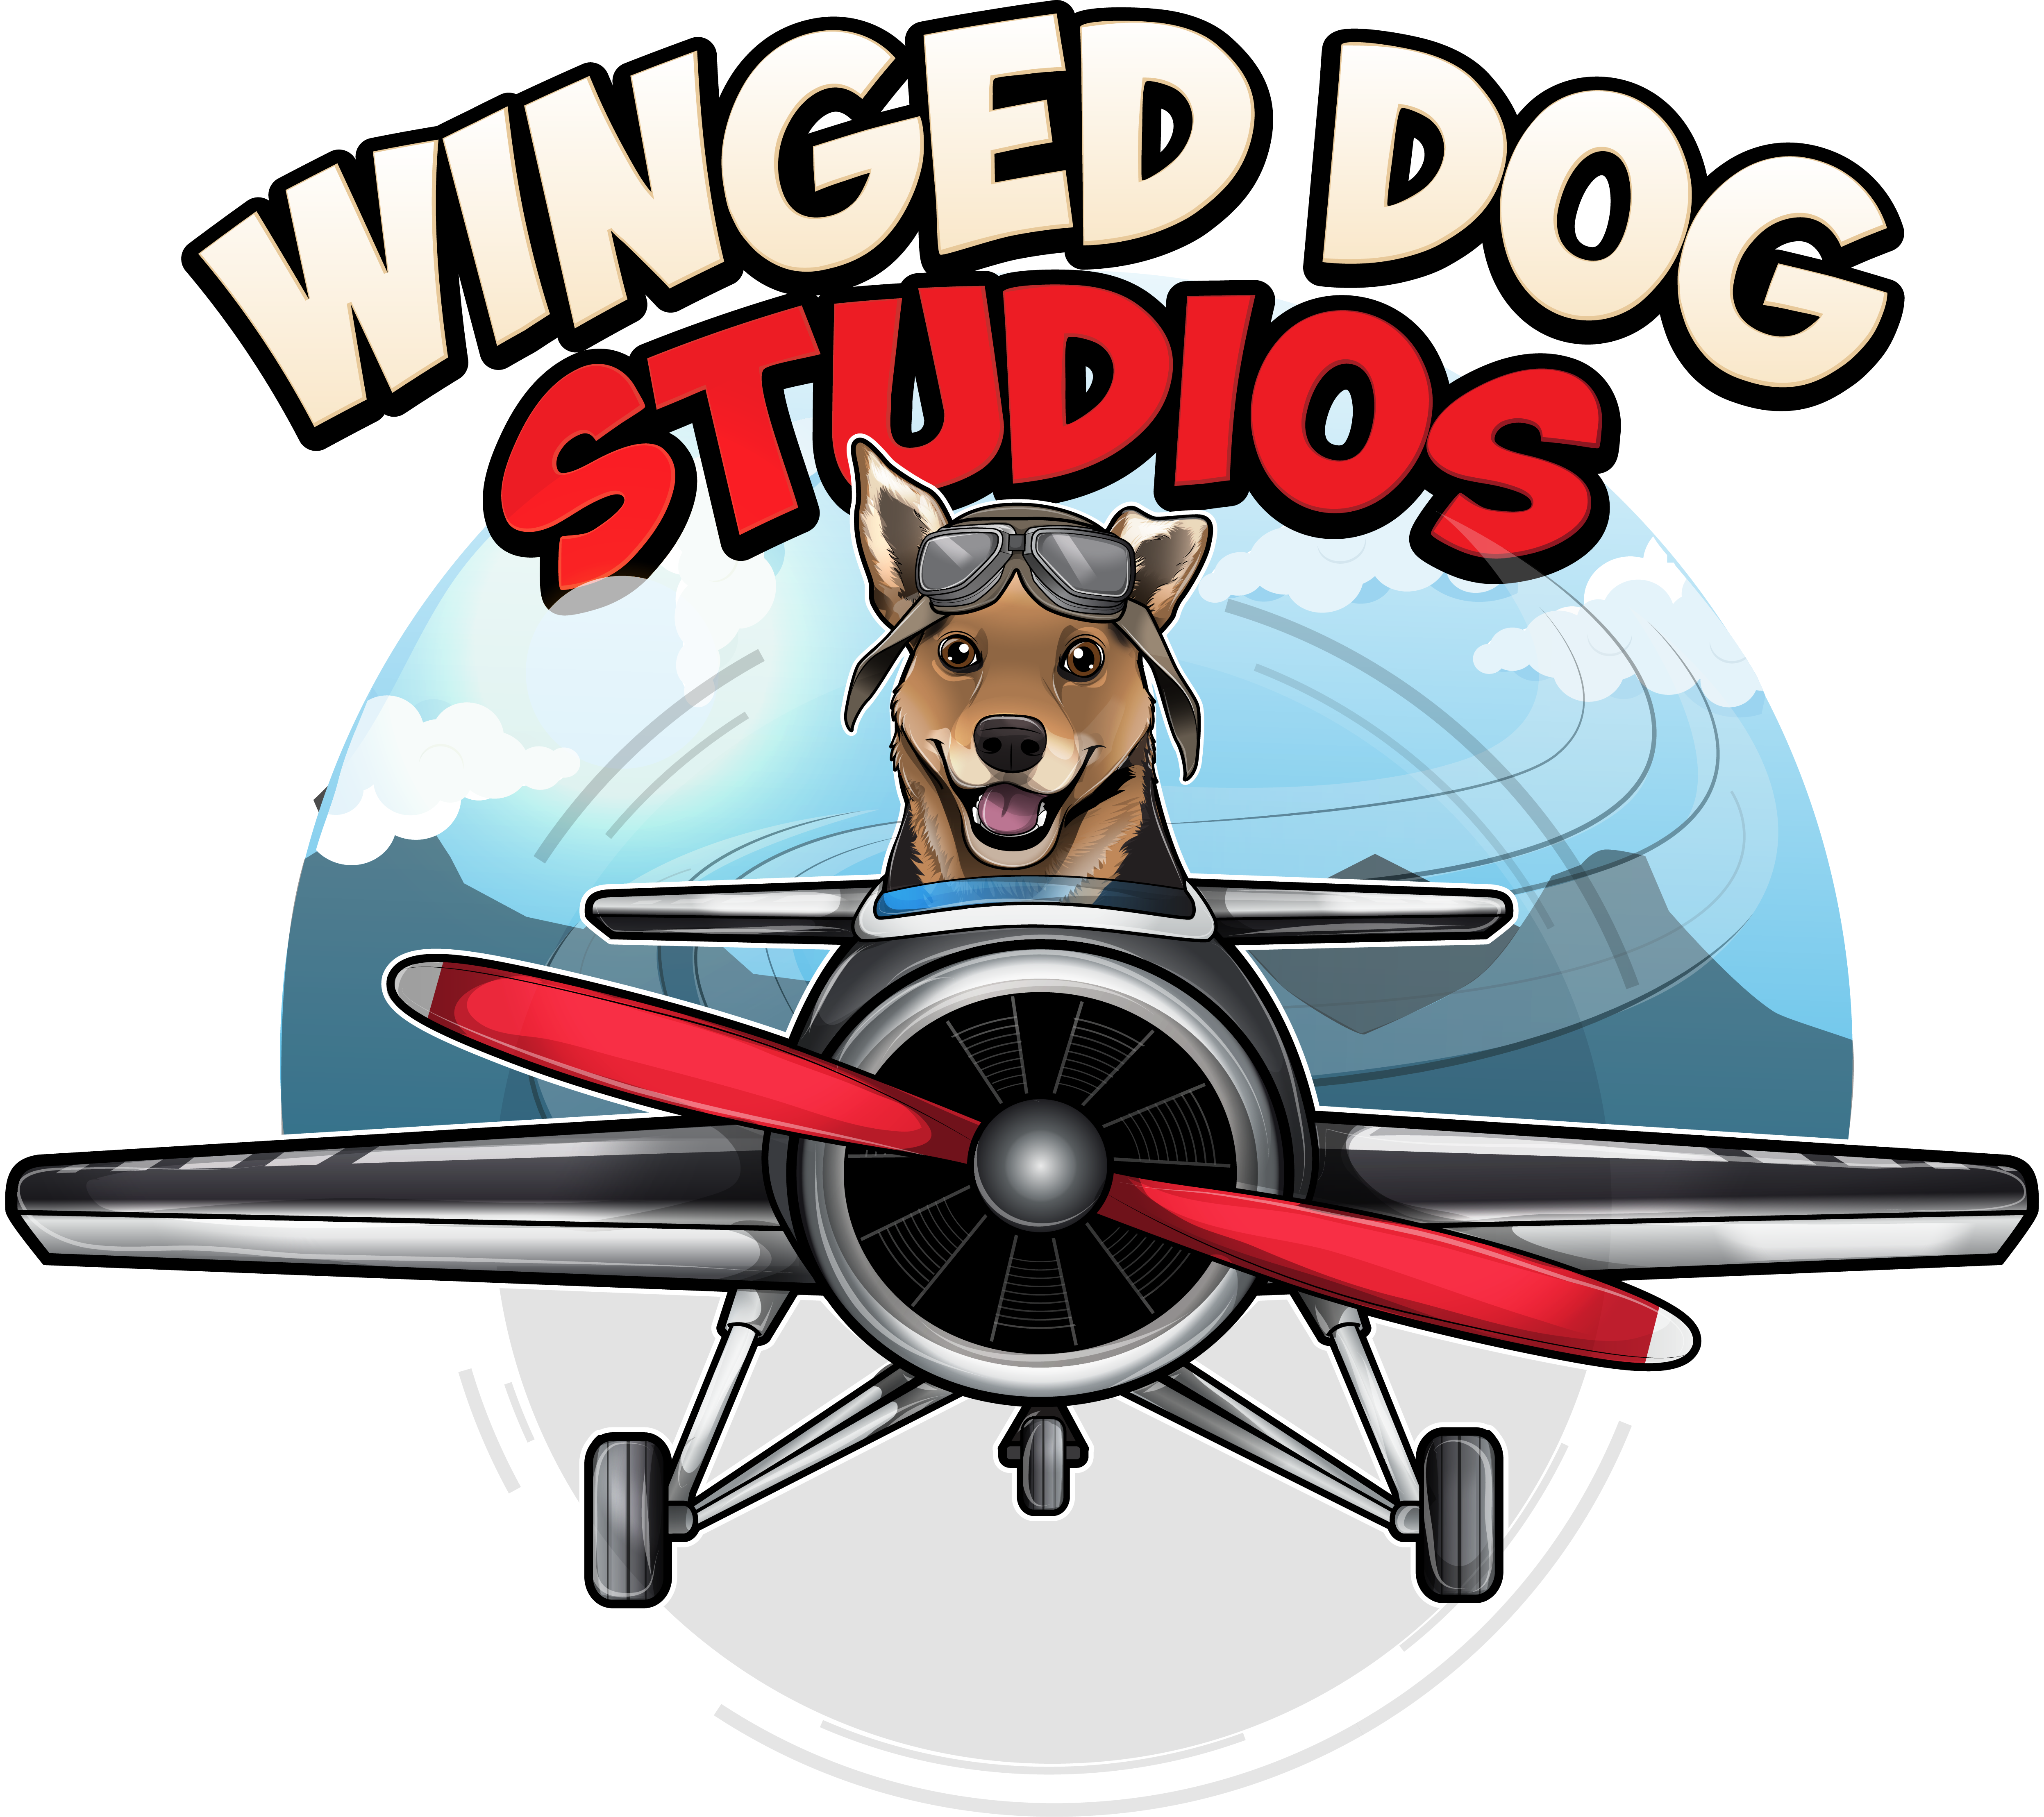 Winged Dog Studios